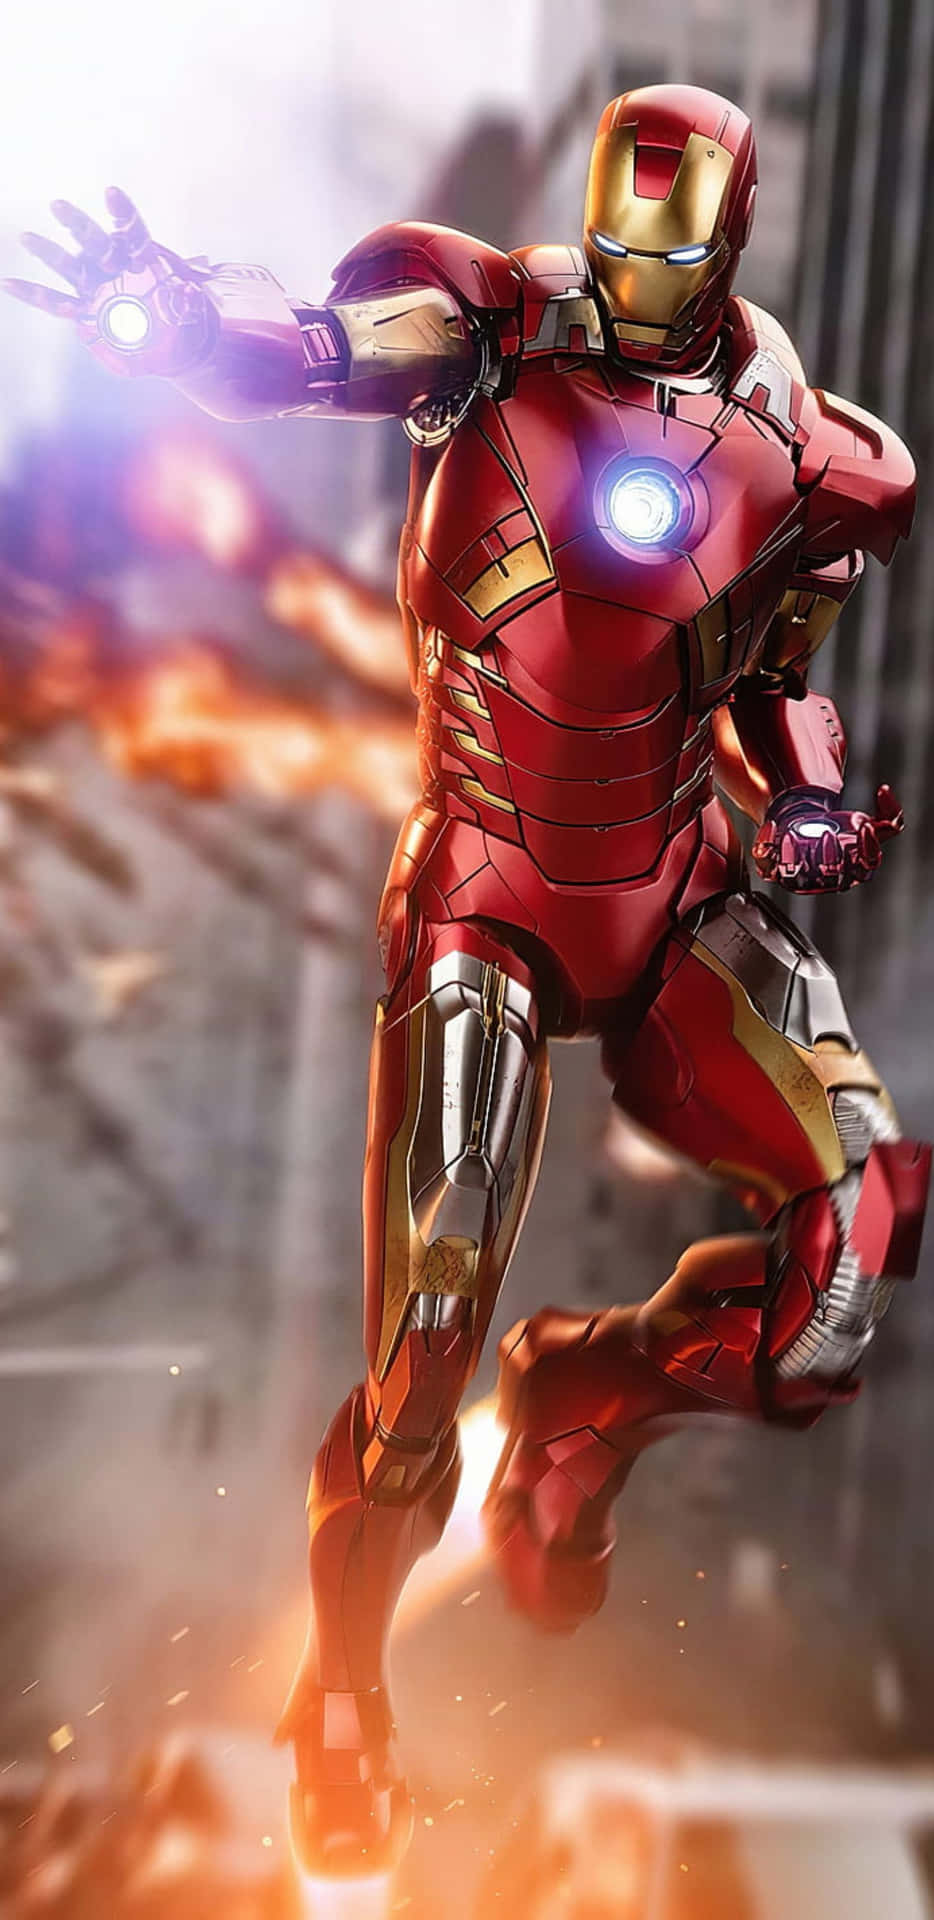 Fondode Pantalla De Pixel 3xl Con Iron Man Volando Con Botas A Reacción